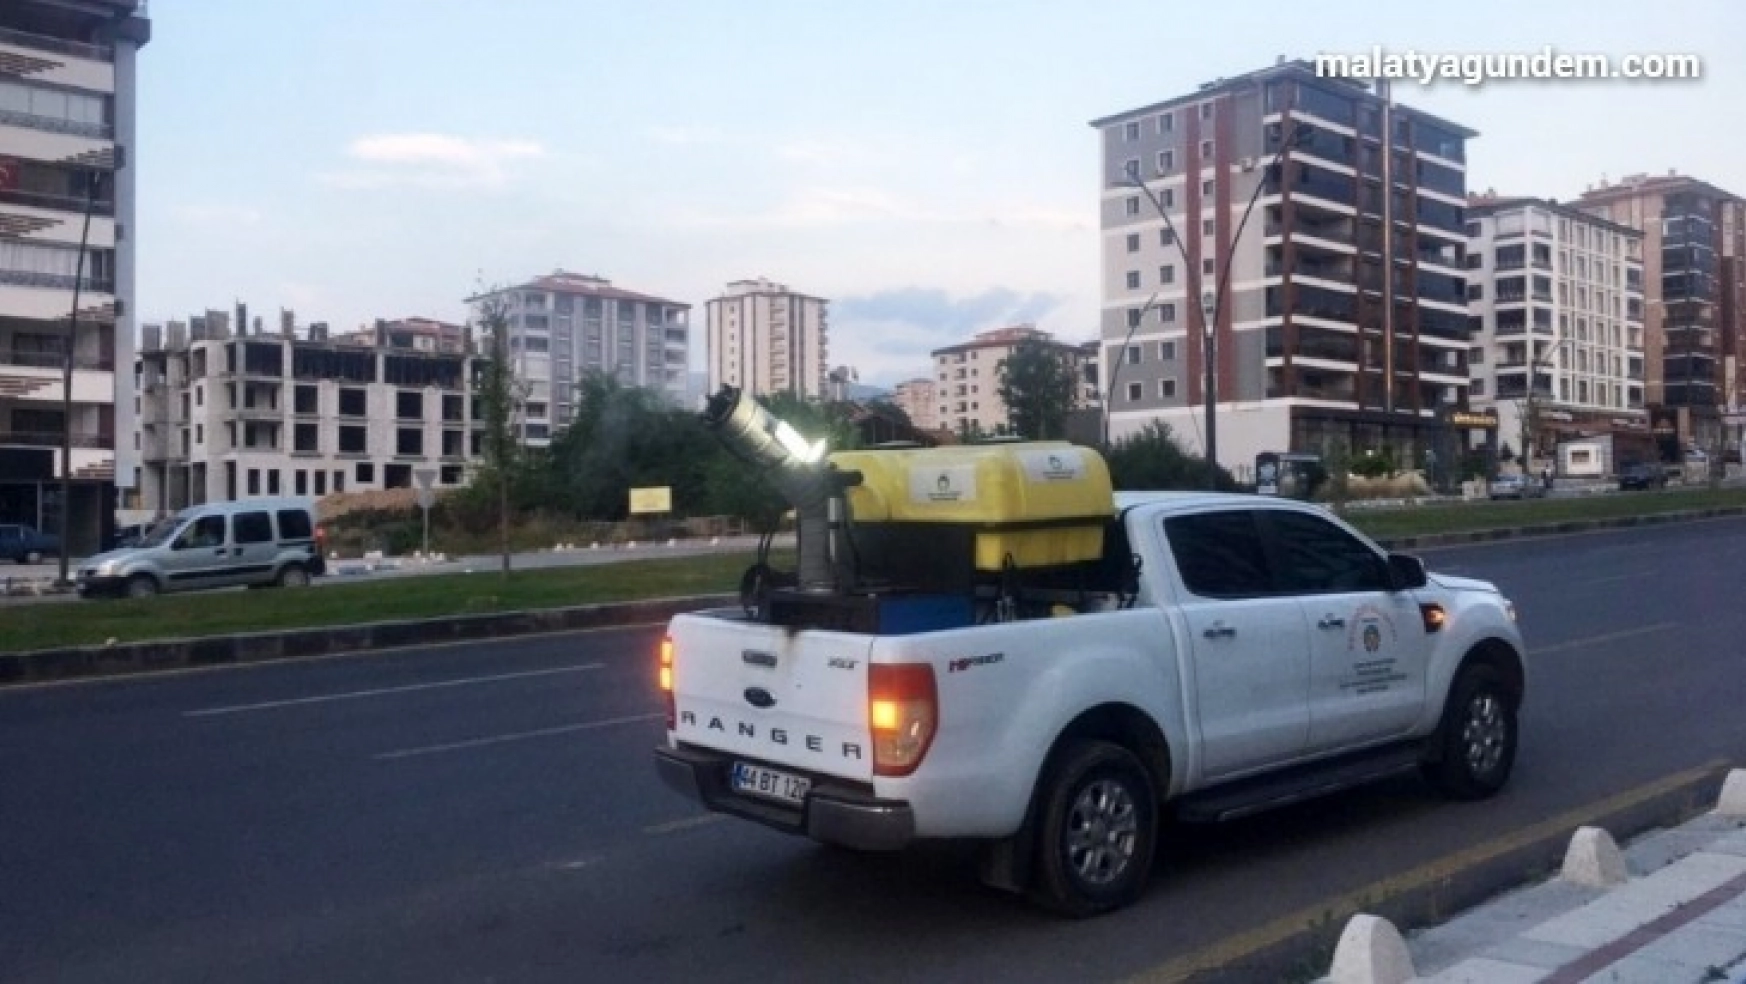 Malatya Büyükşehir Belediyesi, haşerelerle mücadeleyi yoğunlaştırdı